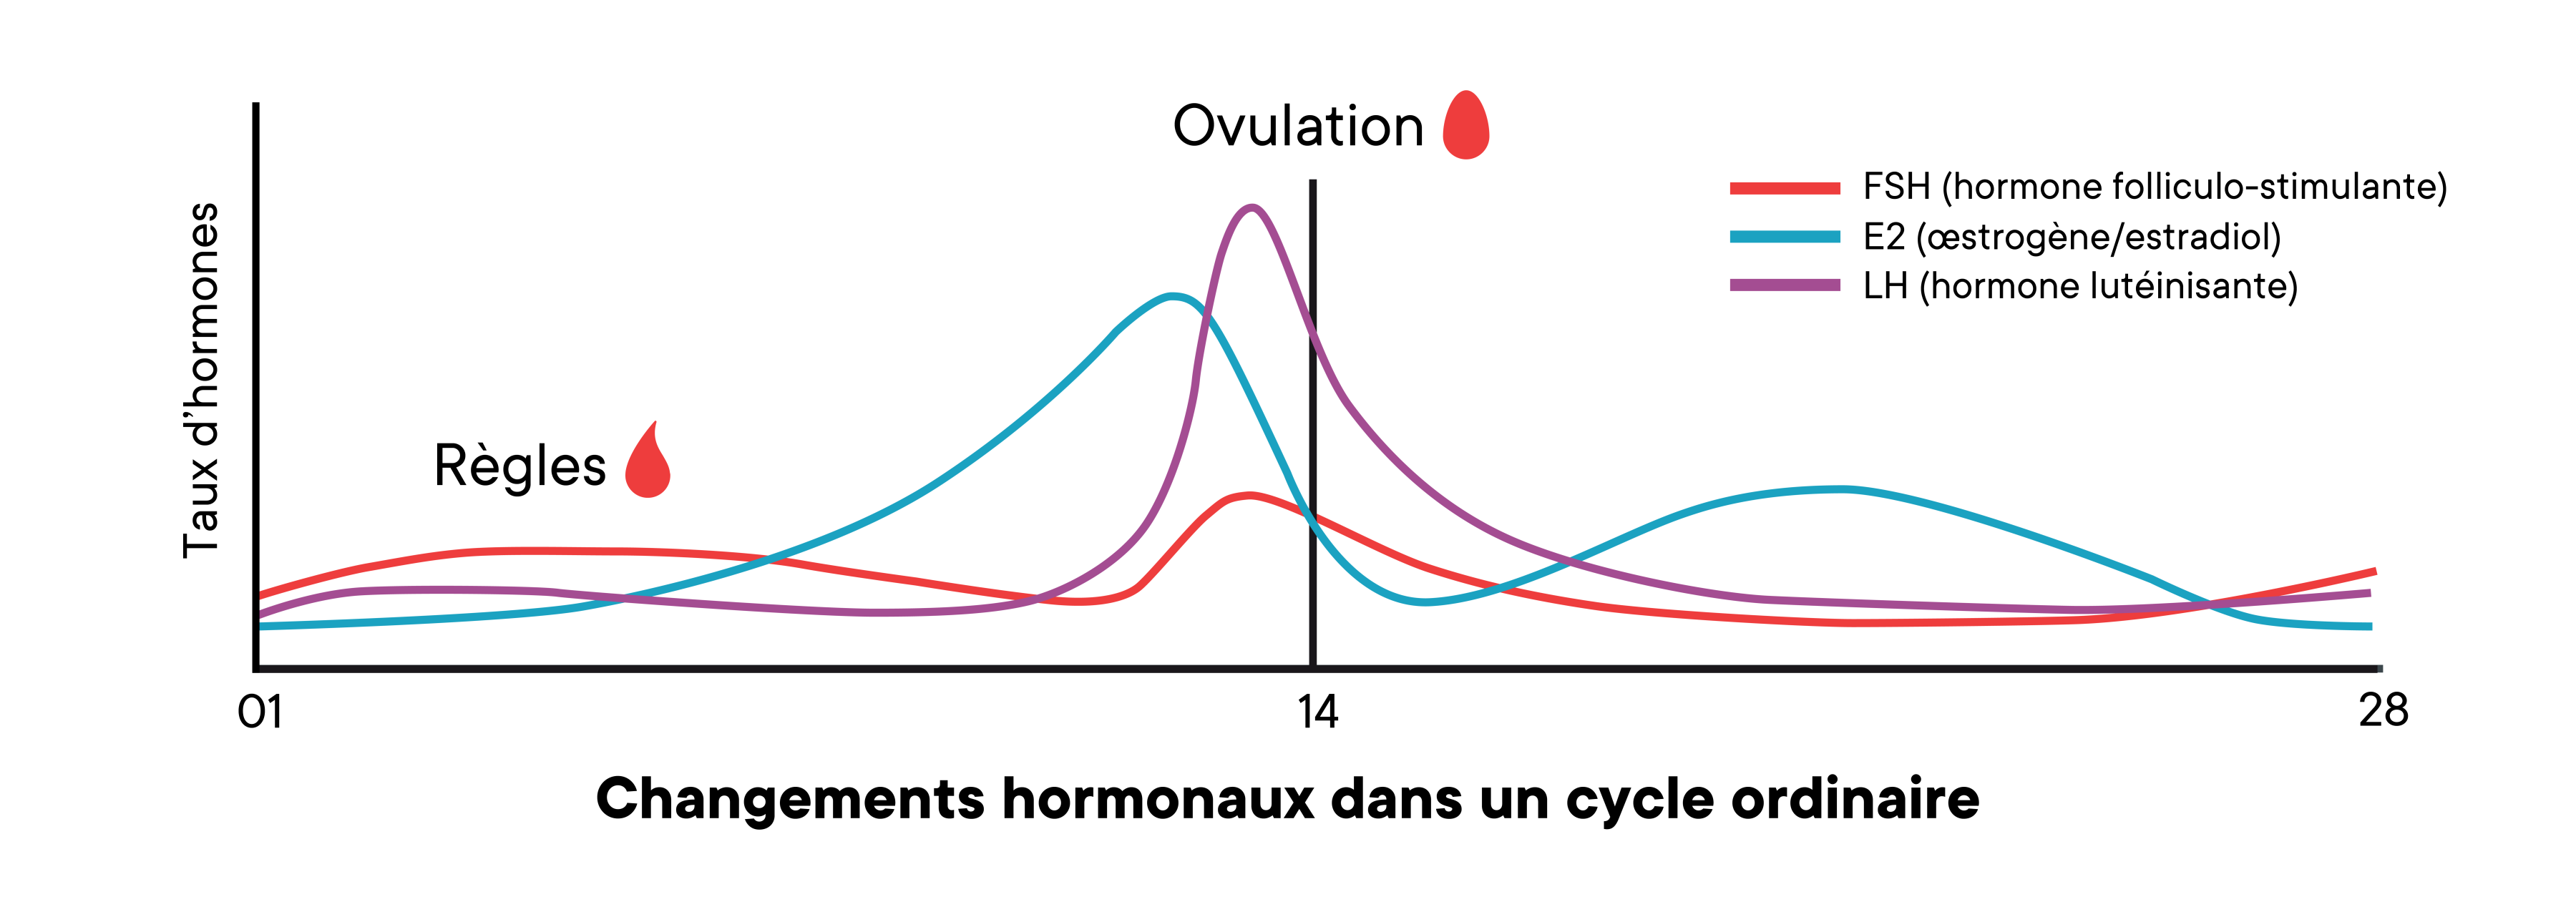 Un graphique montrant les changements des niveaux d'hormones dans un cycle moyen au fil du temps